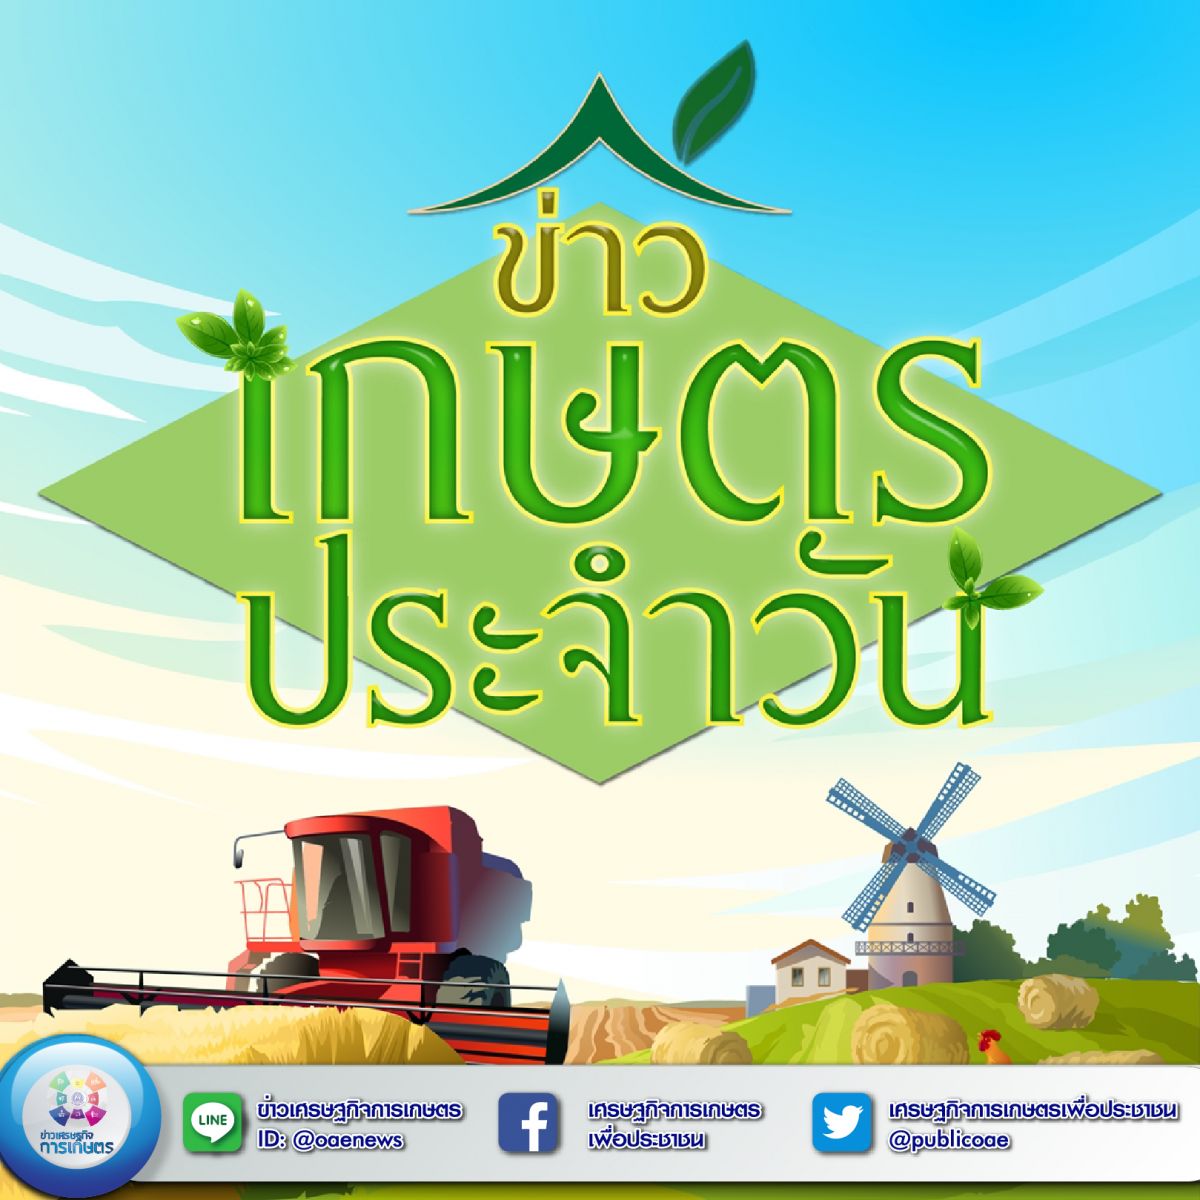 สรุปหัวข้อข่าวด้านการเกษตรที่สำคัญ นสพ.ประจำวันที่ 30 มีนาคม 2563